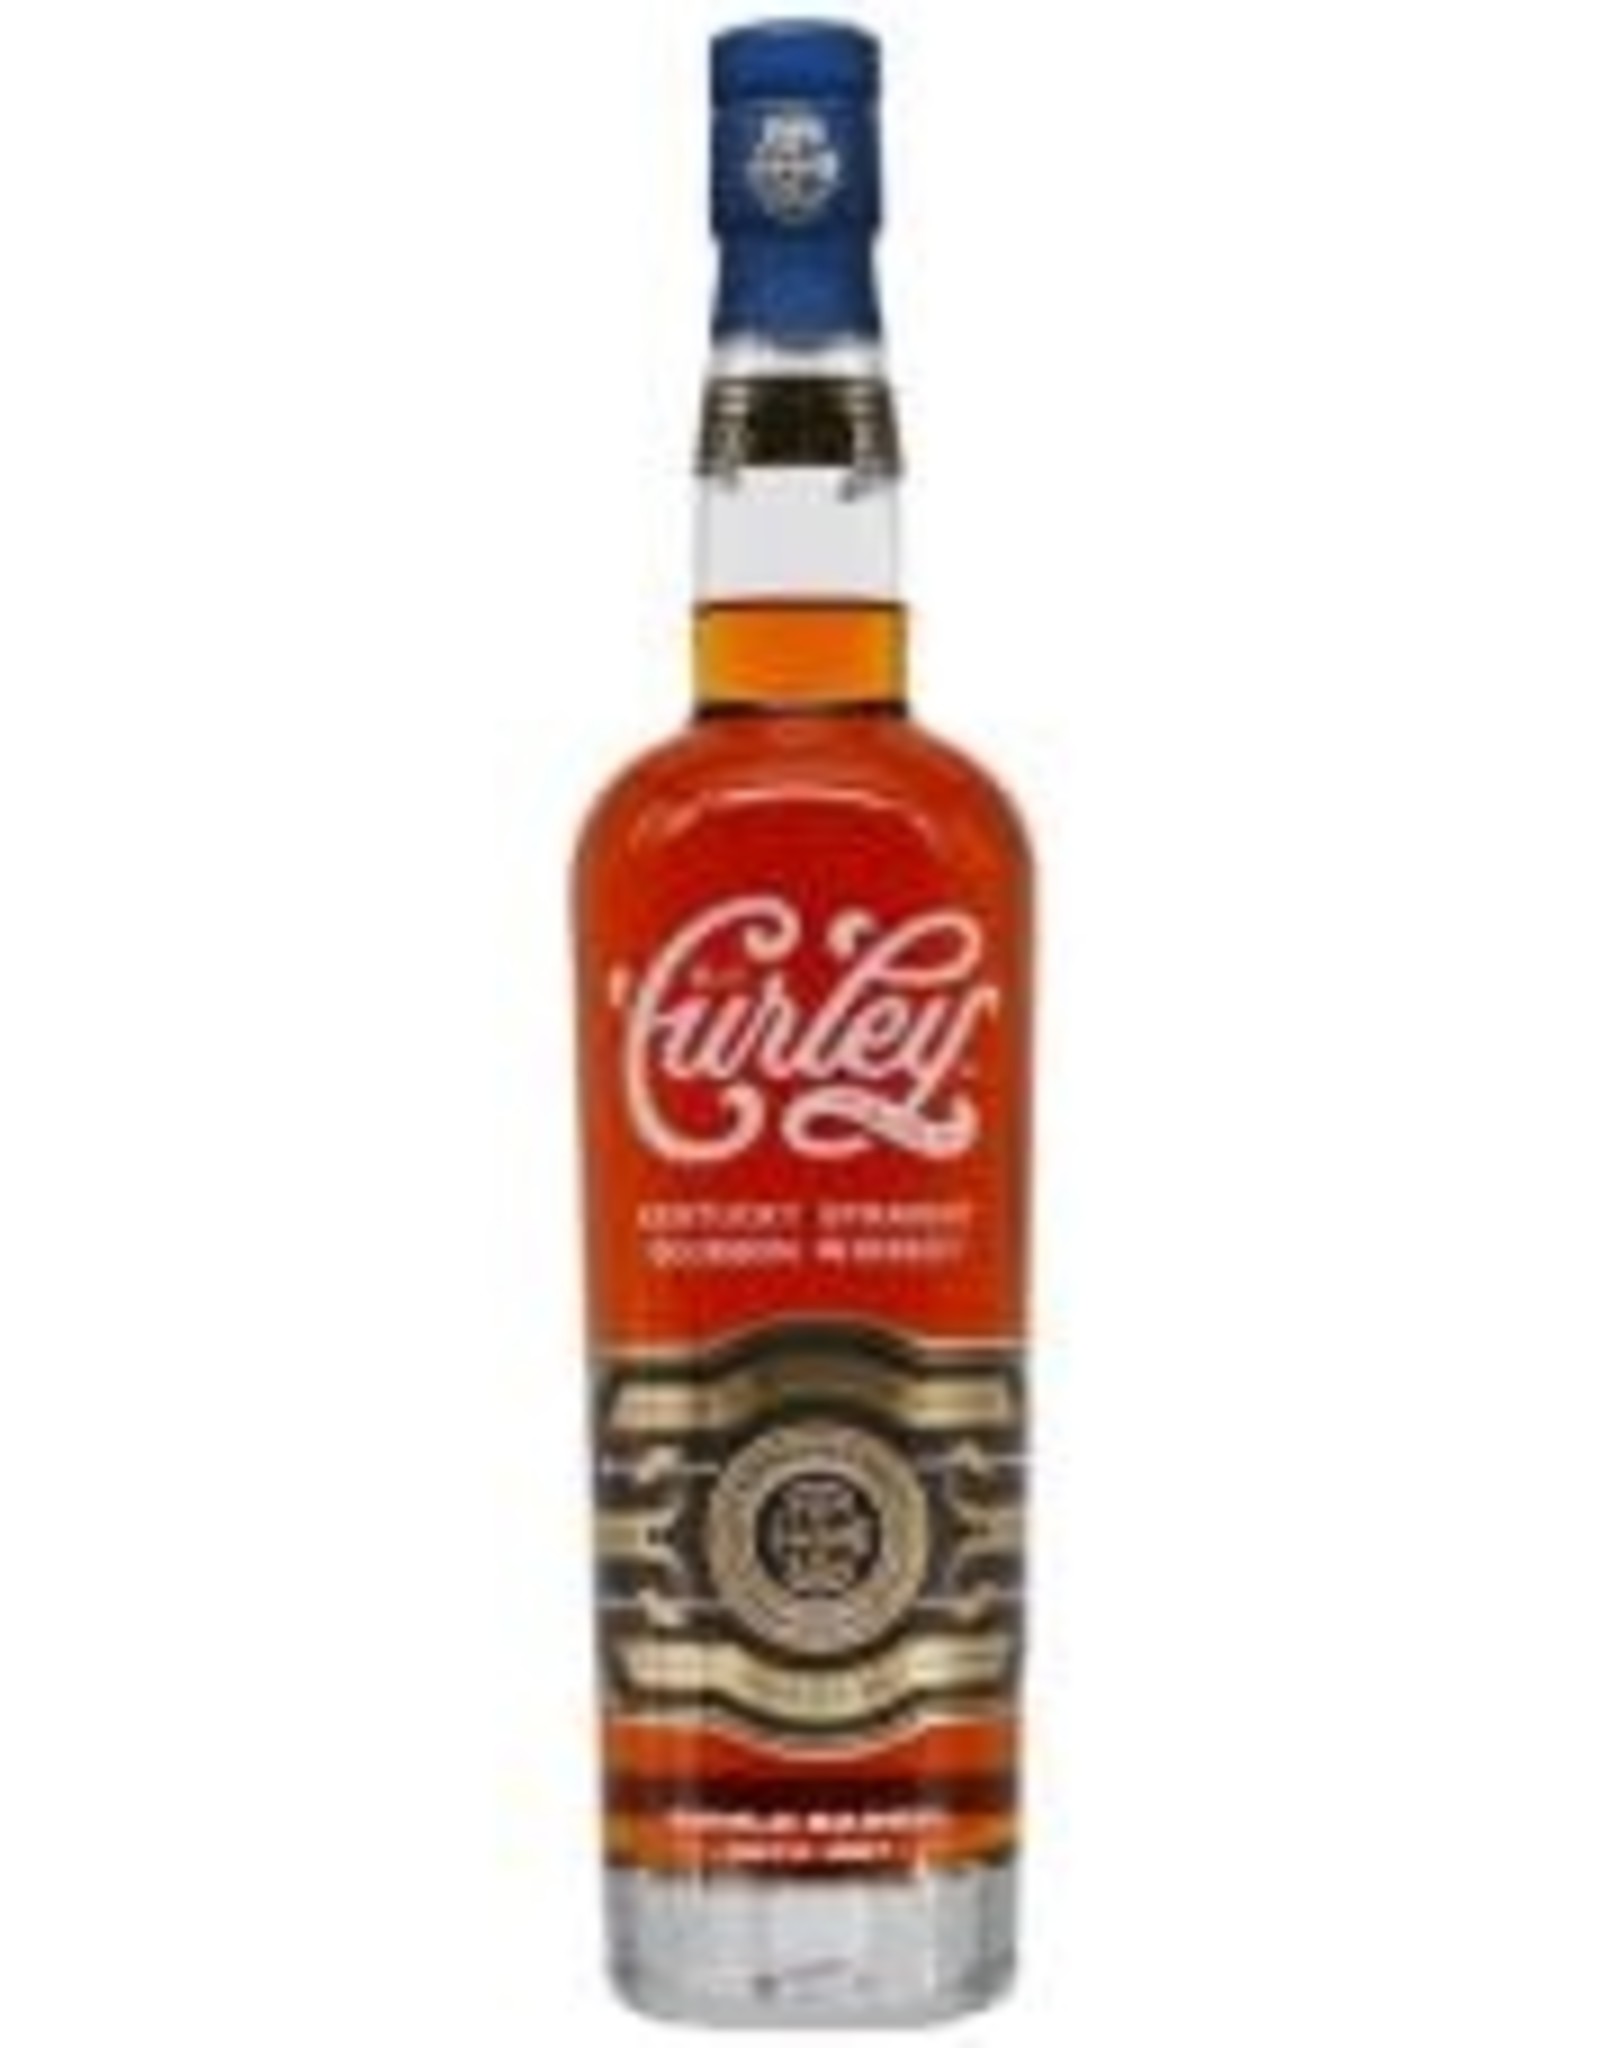 EJ Curley EJ Curley & Co Small Batch Bourbon